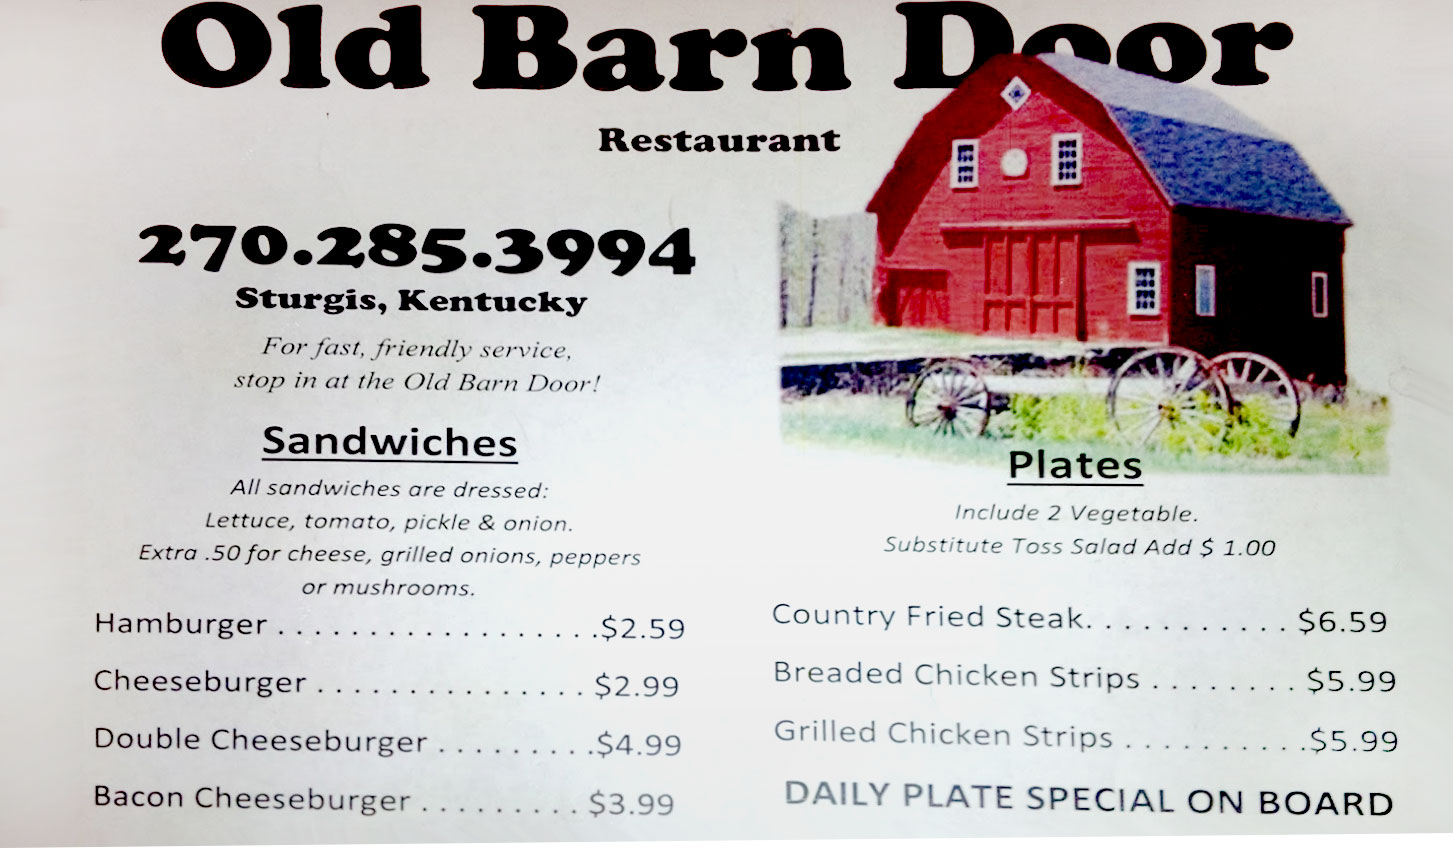 Old Barn Door Restaurant